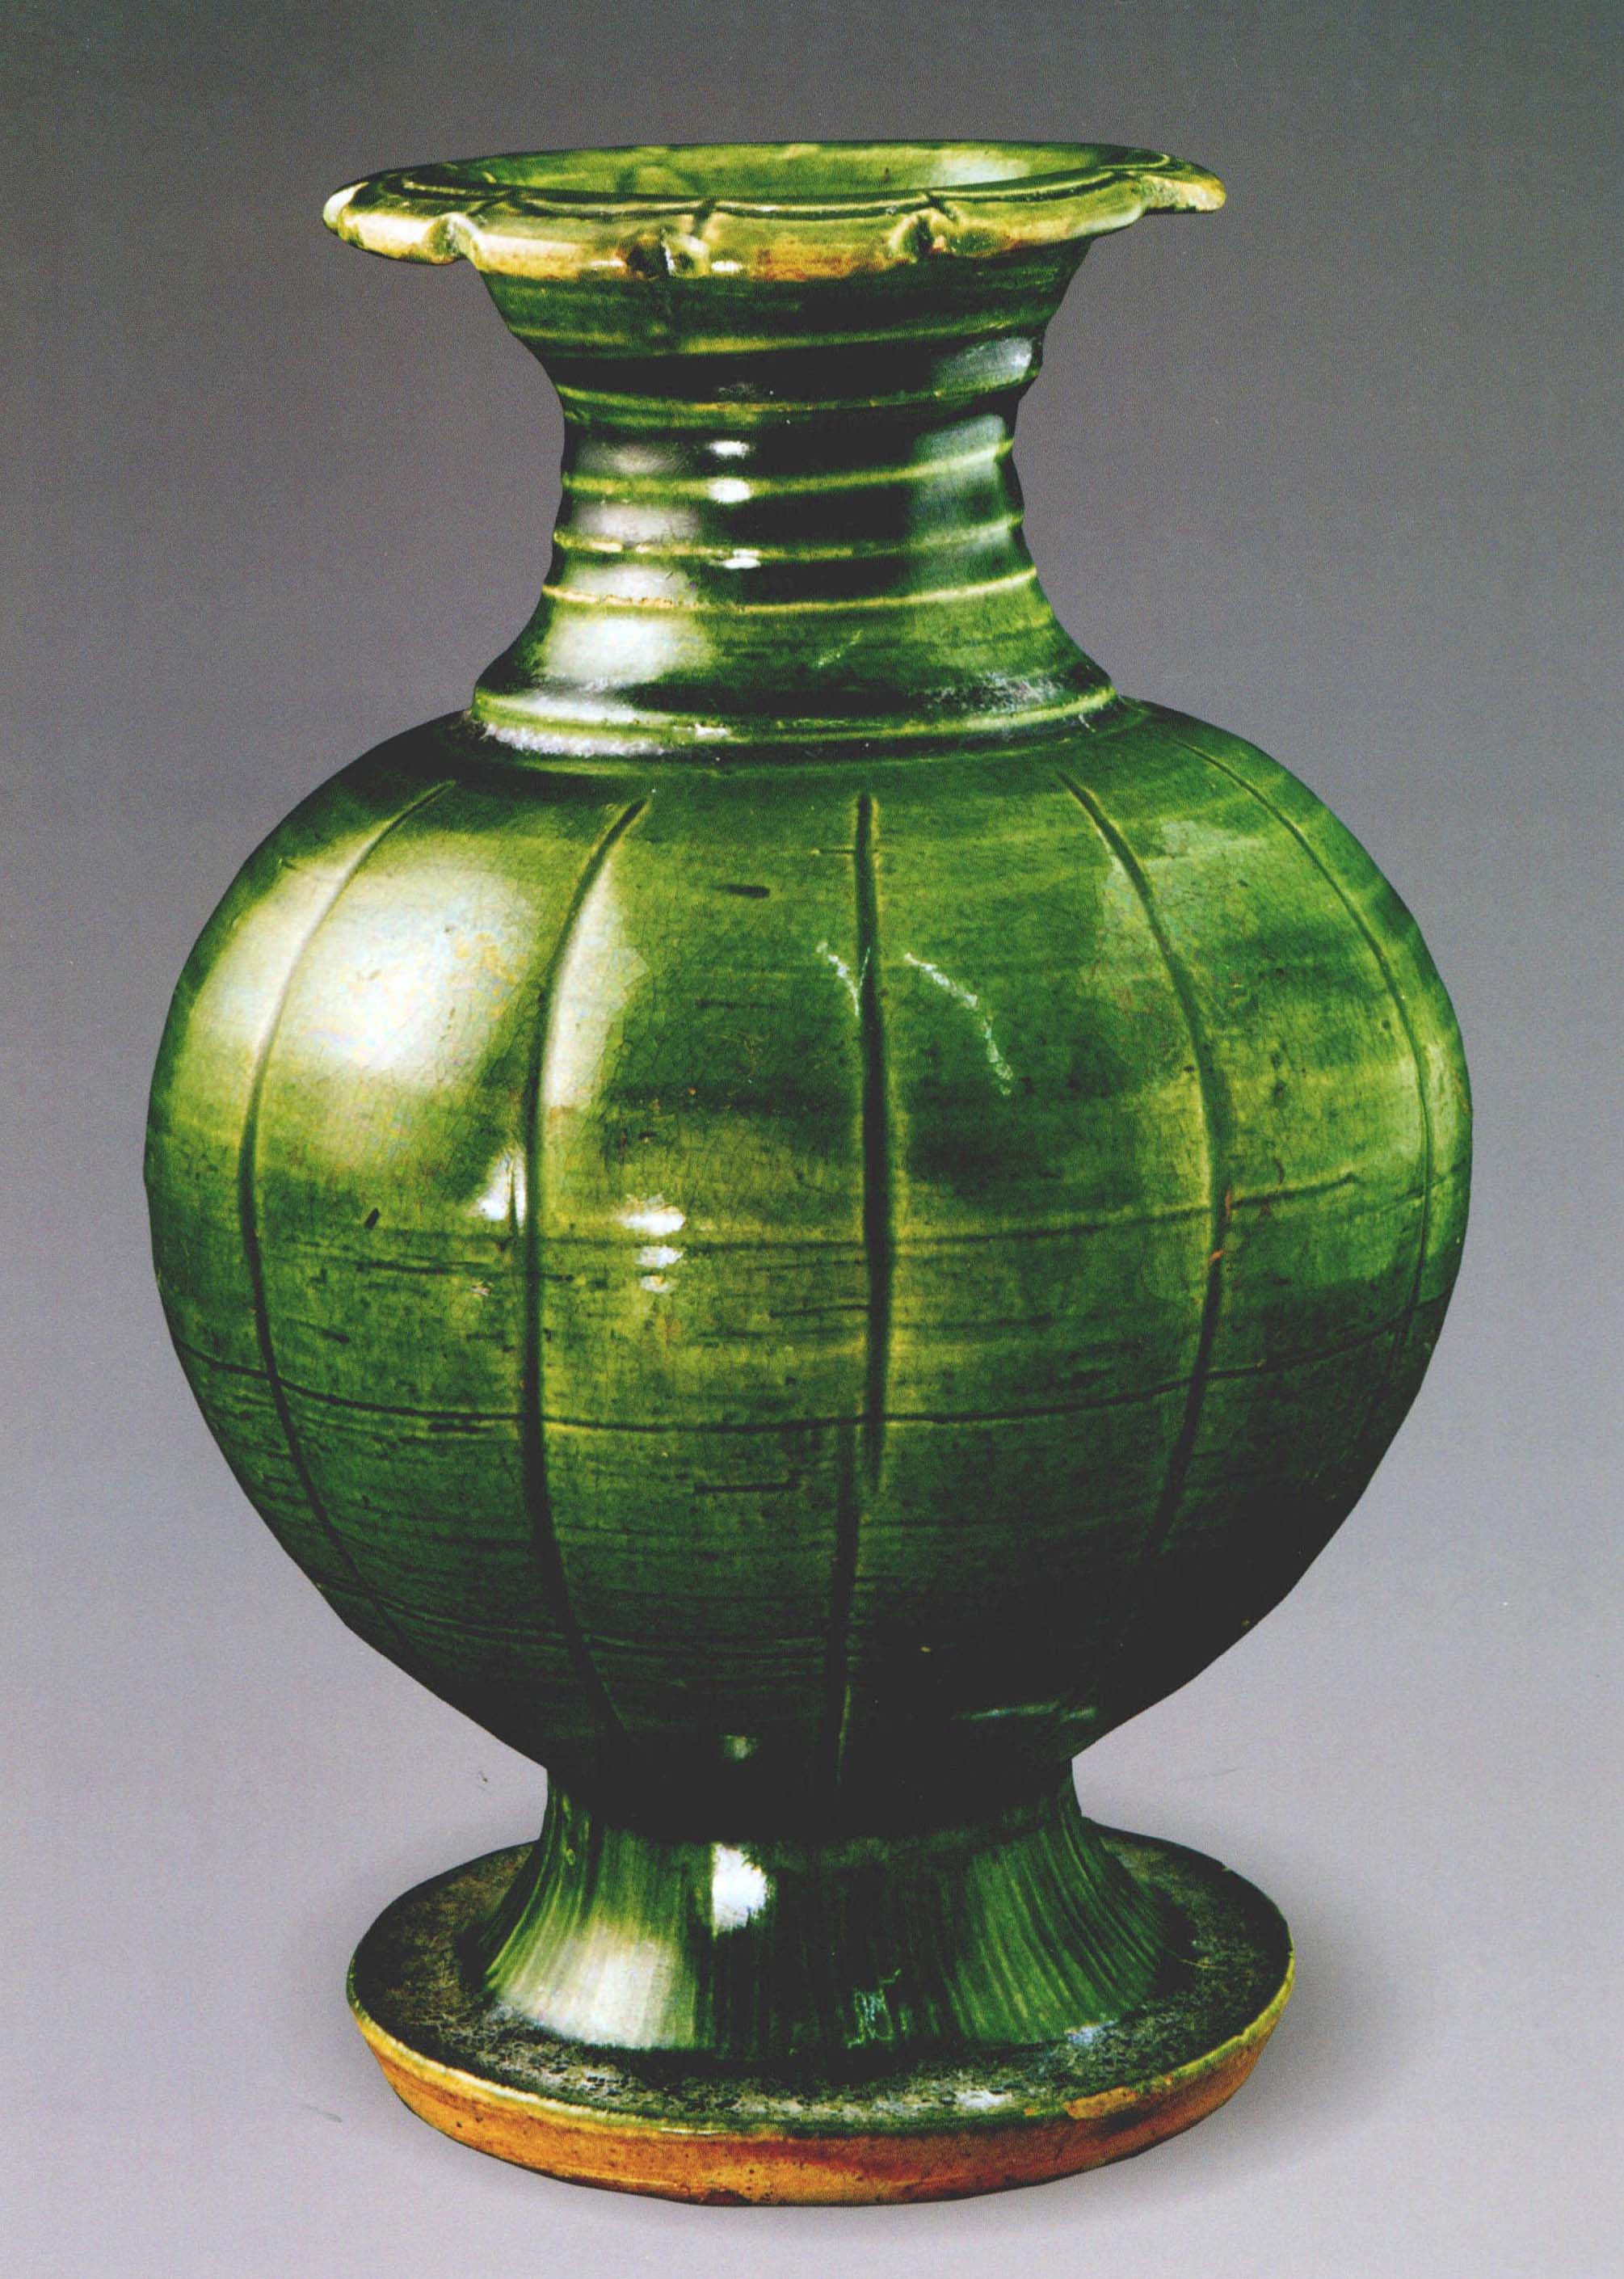 博物馆藏宋代绿釉瓷器图片